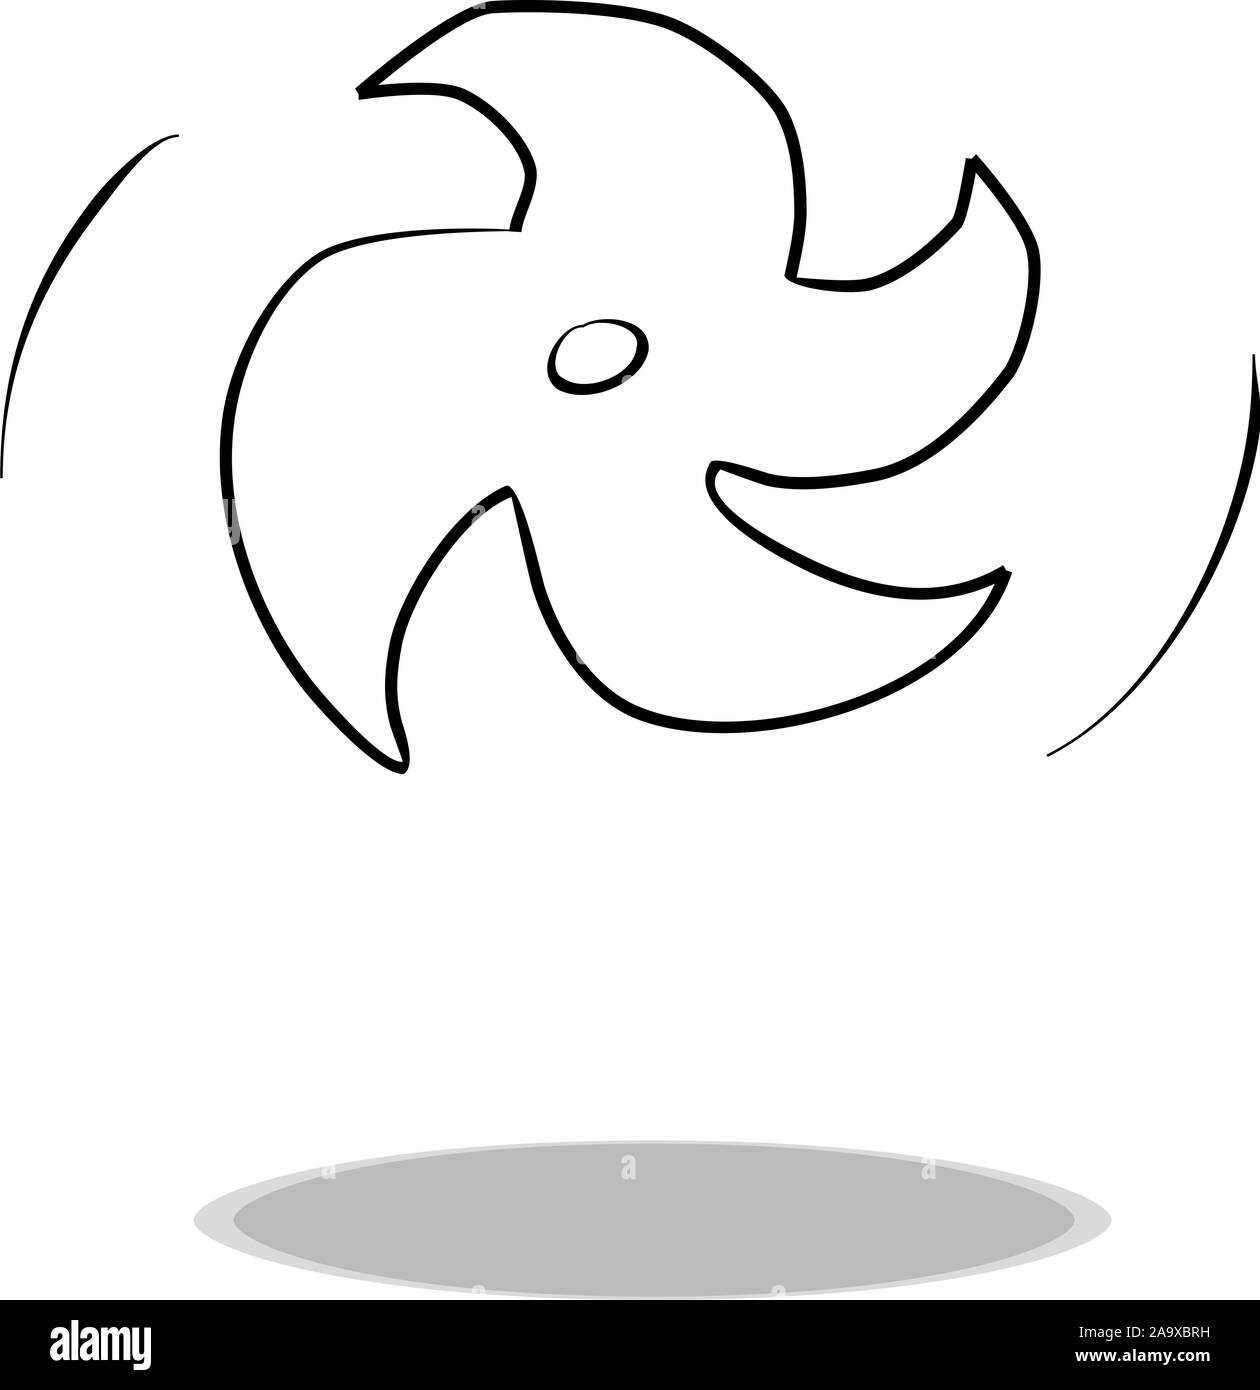 L'icône de disque rotatif sur fond blanc, modèle plat, dessin à la main. Illustration de jouet, symbole de contour Illustration de Vecteur